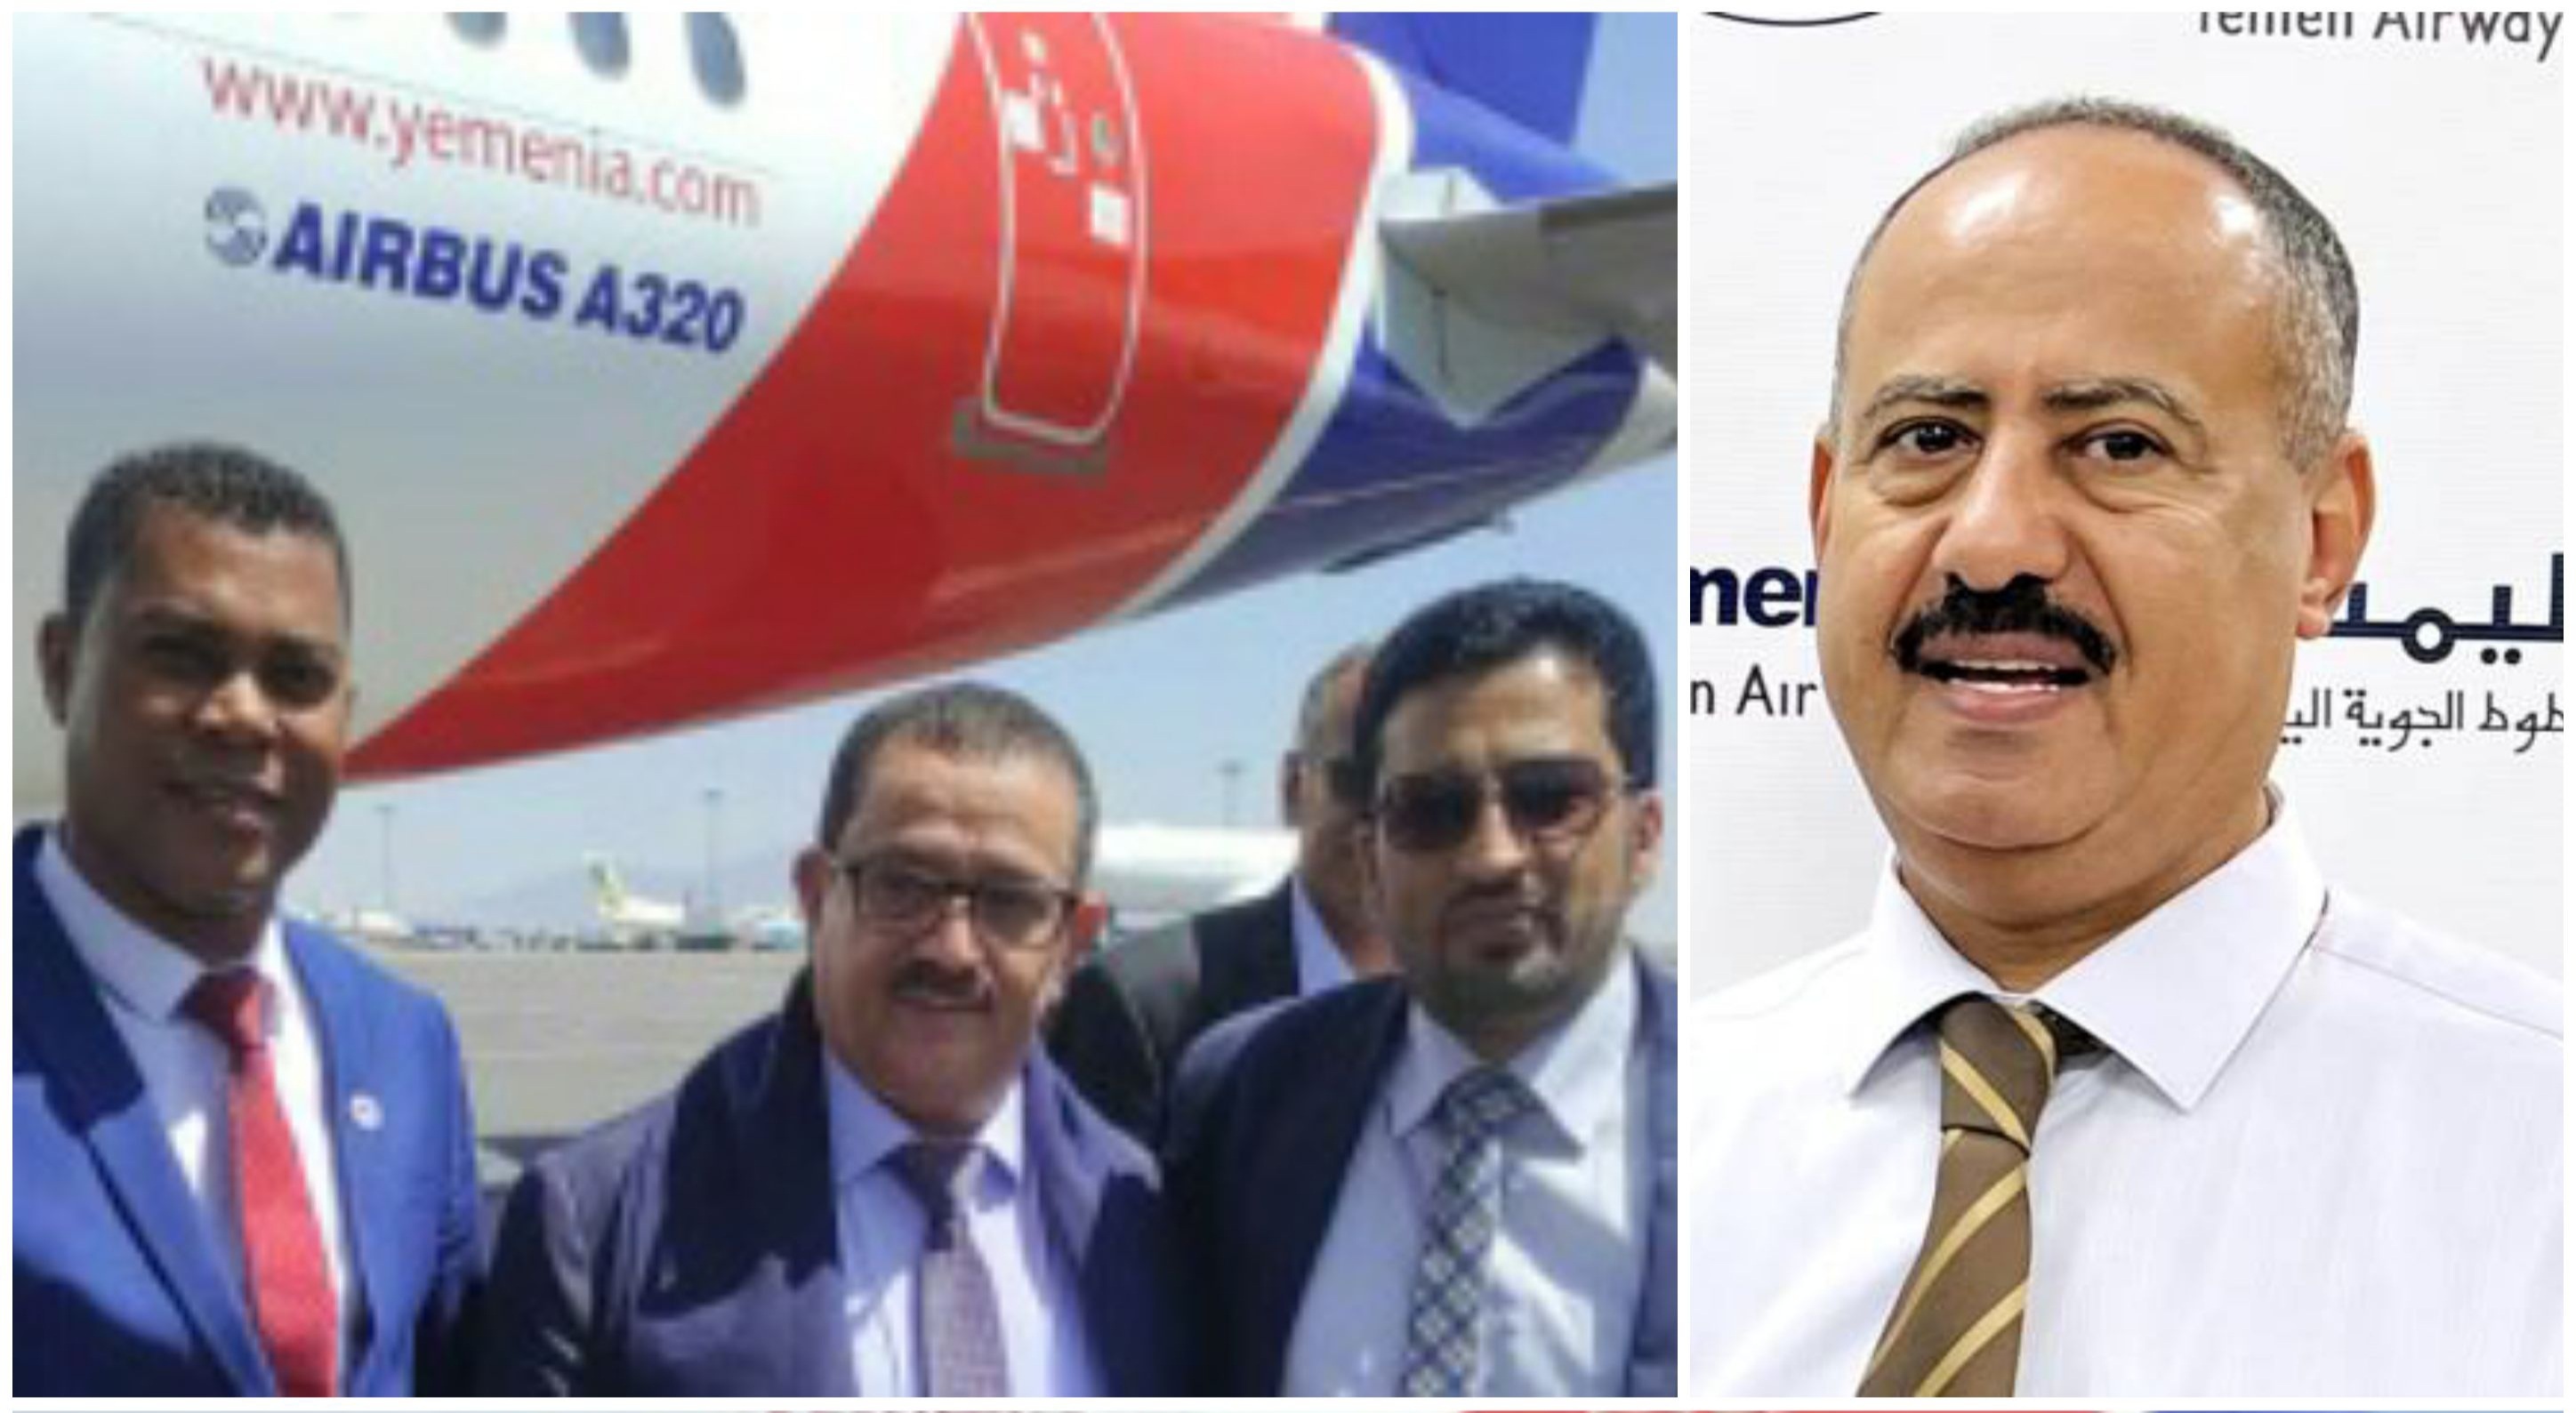 بشرى سارة للمسافرين الخطوط الجوية اليمنية تعلن التوقيع على إتفاقية جديدة لتسيير رحلات الى سقطرى